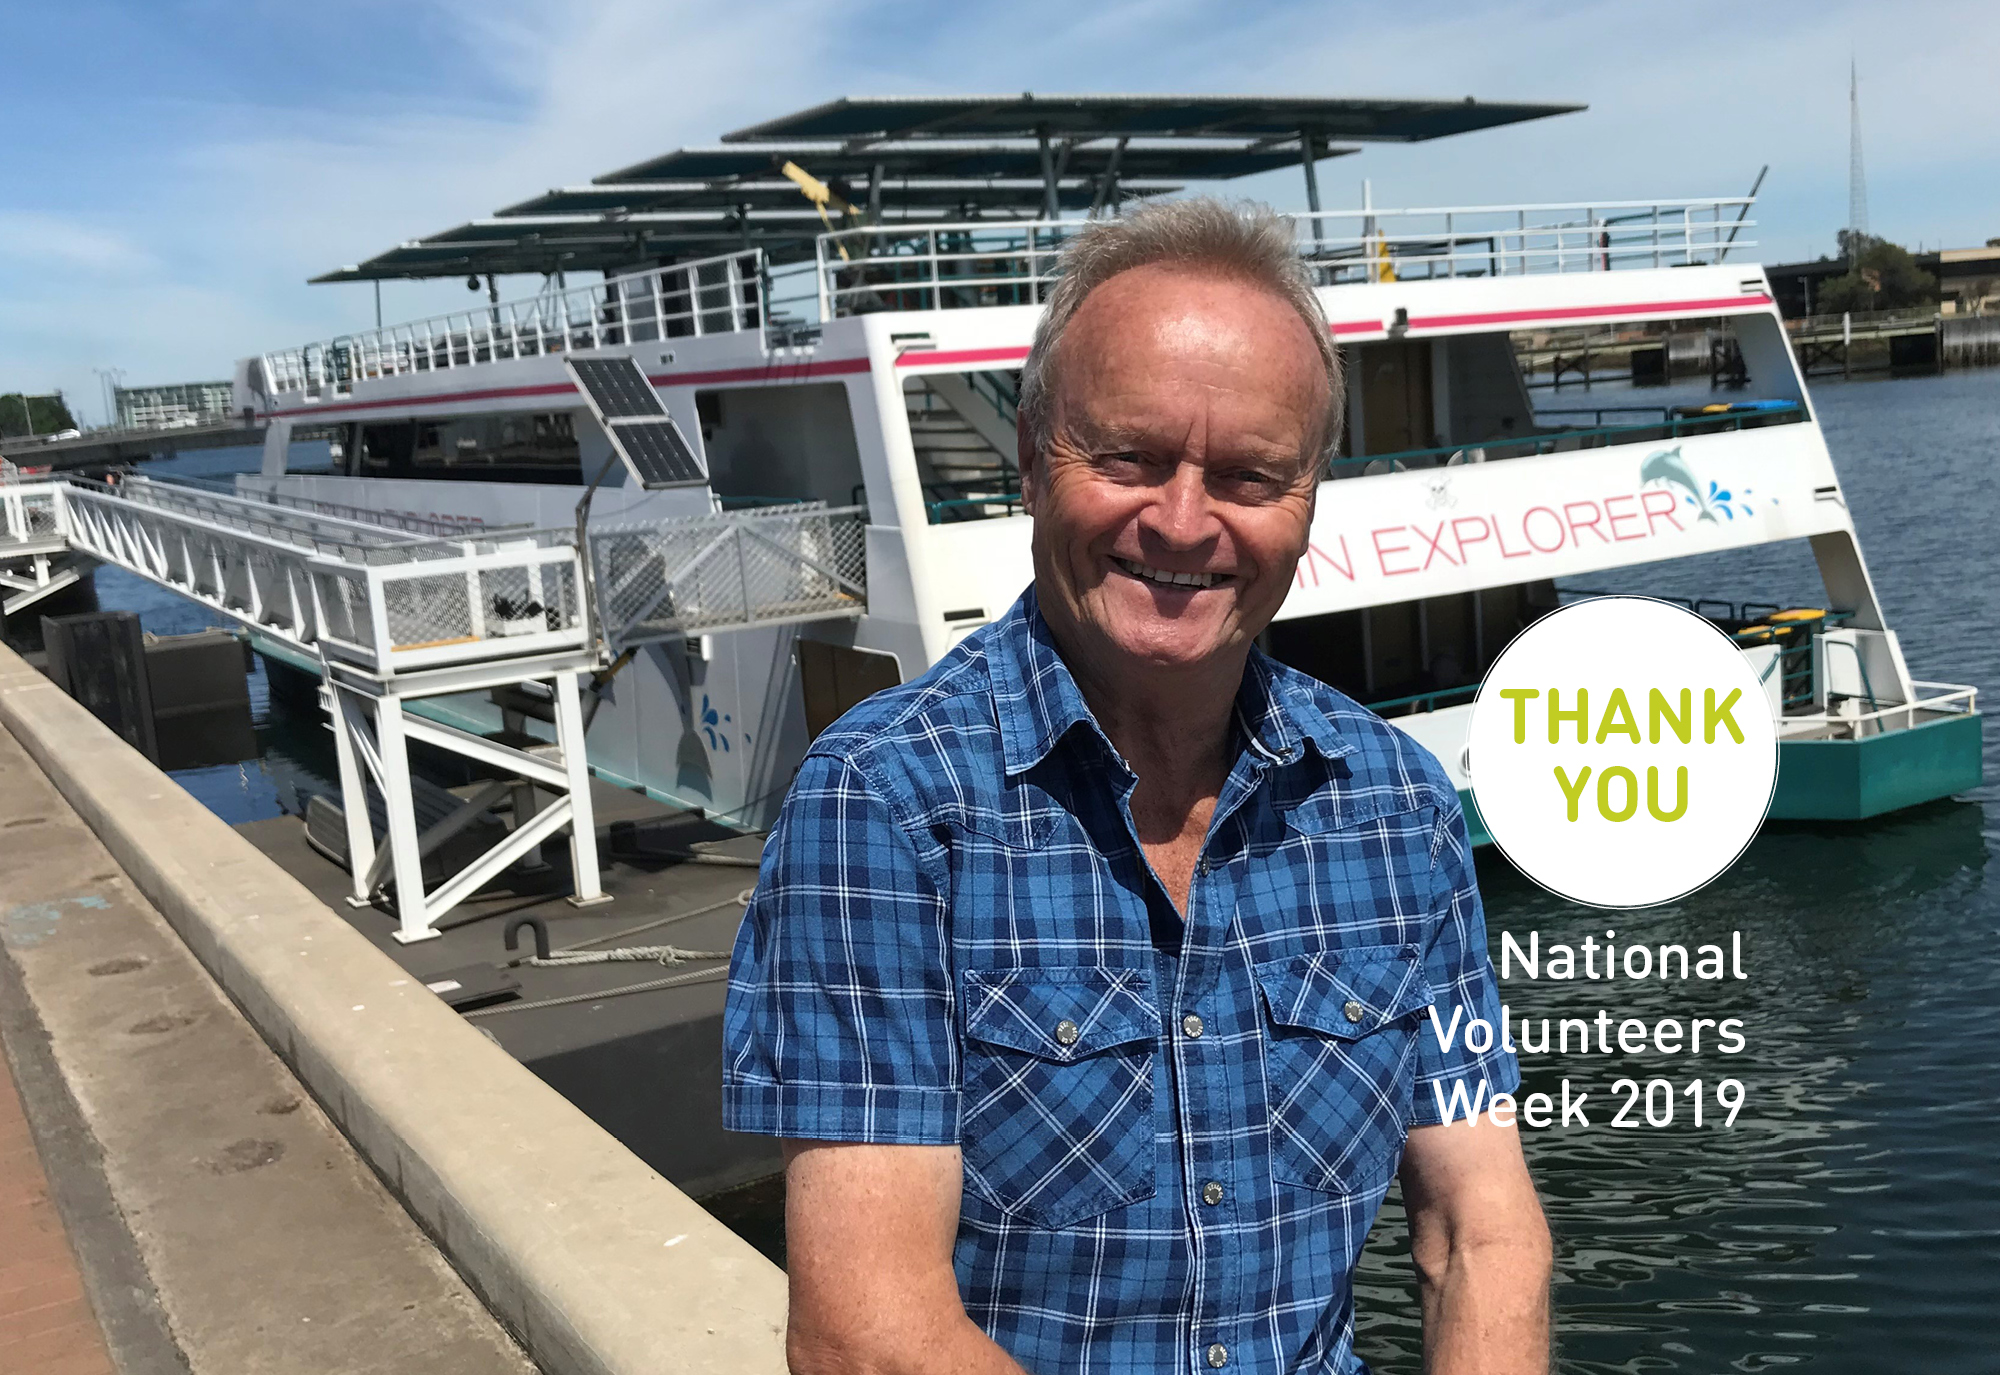 National Volunteers Week 2019 volunteer in front of boat